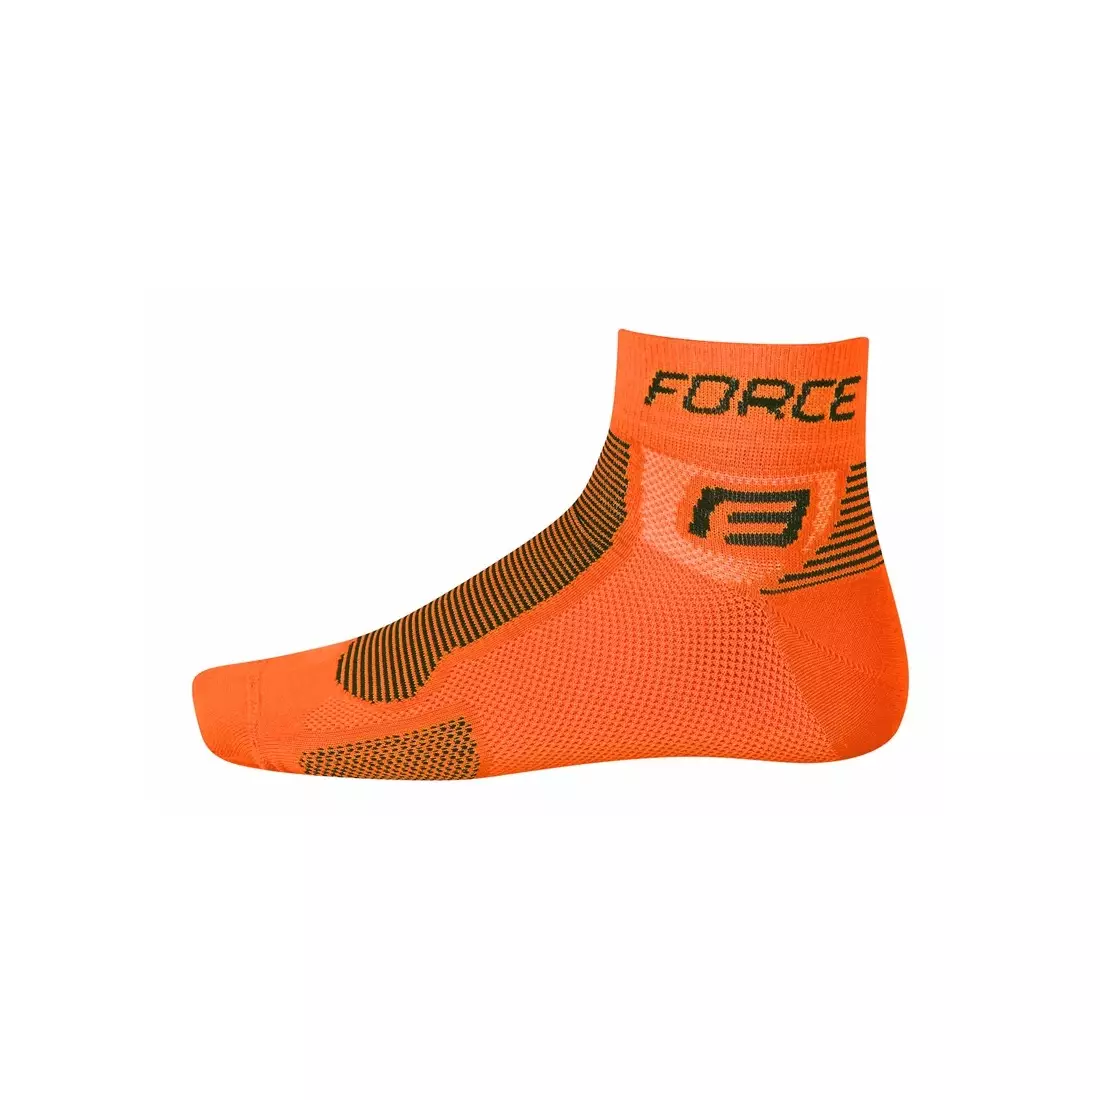 FORCE ponožky 9010, barva: oranžová